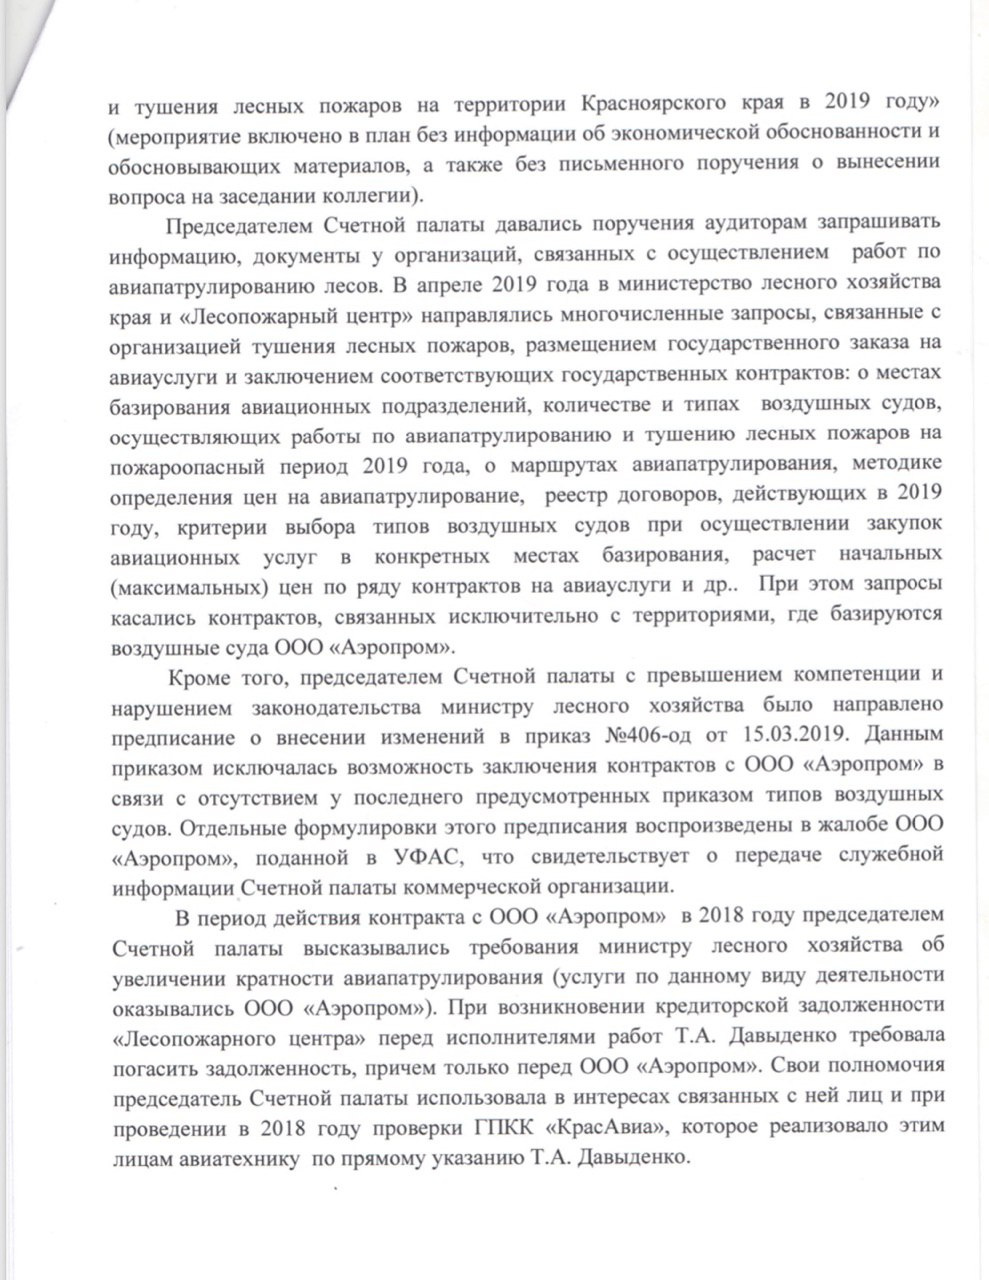 Справка экспертного управления Законодательного собрания по Татьяне Давыденко